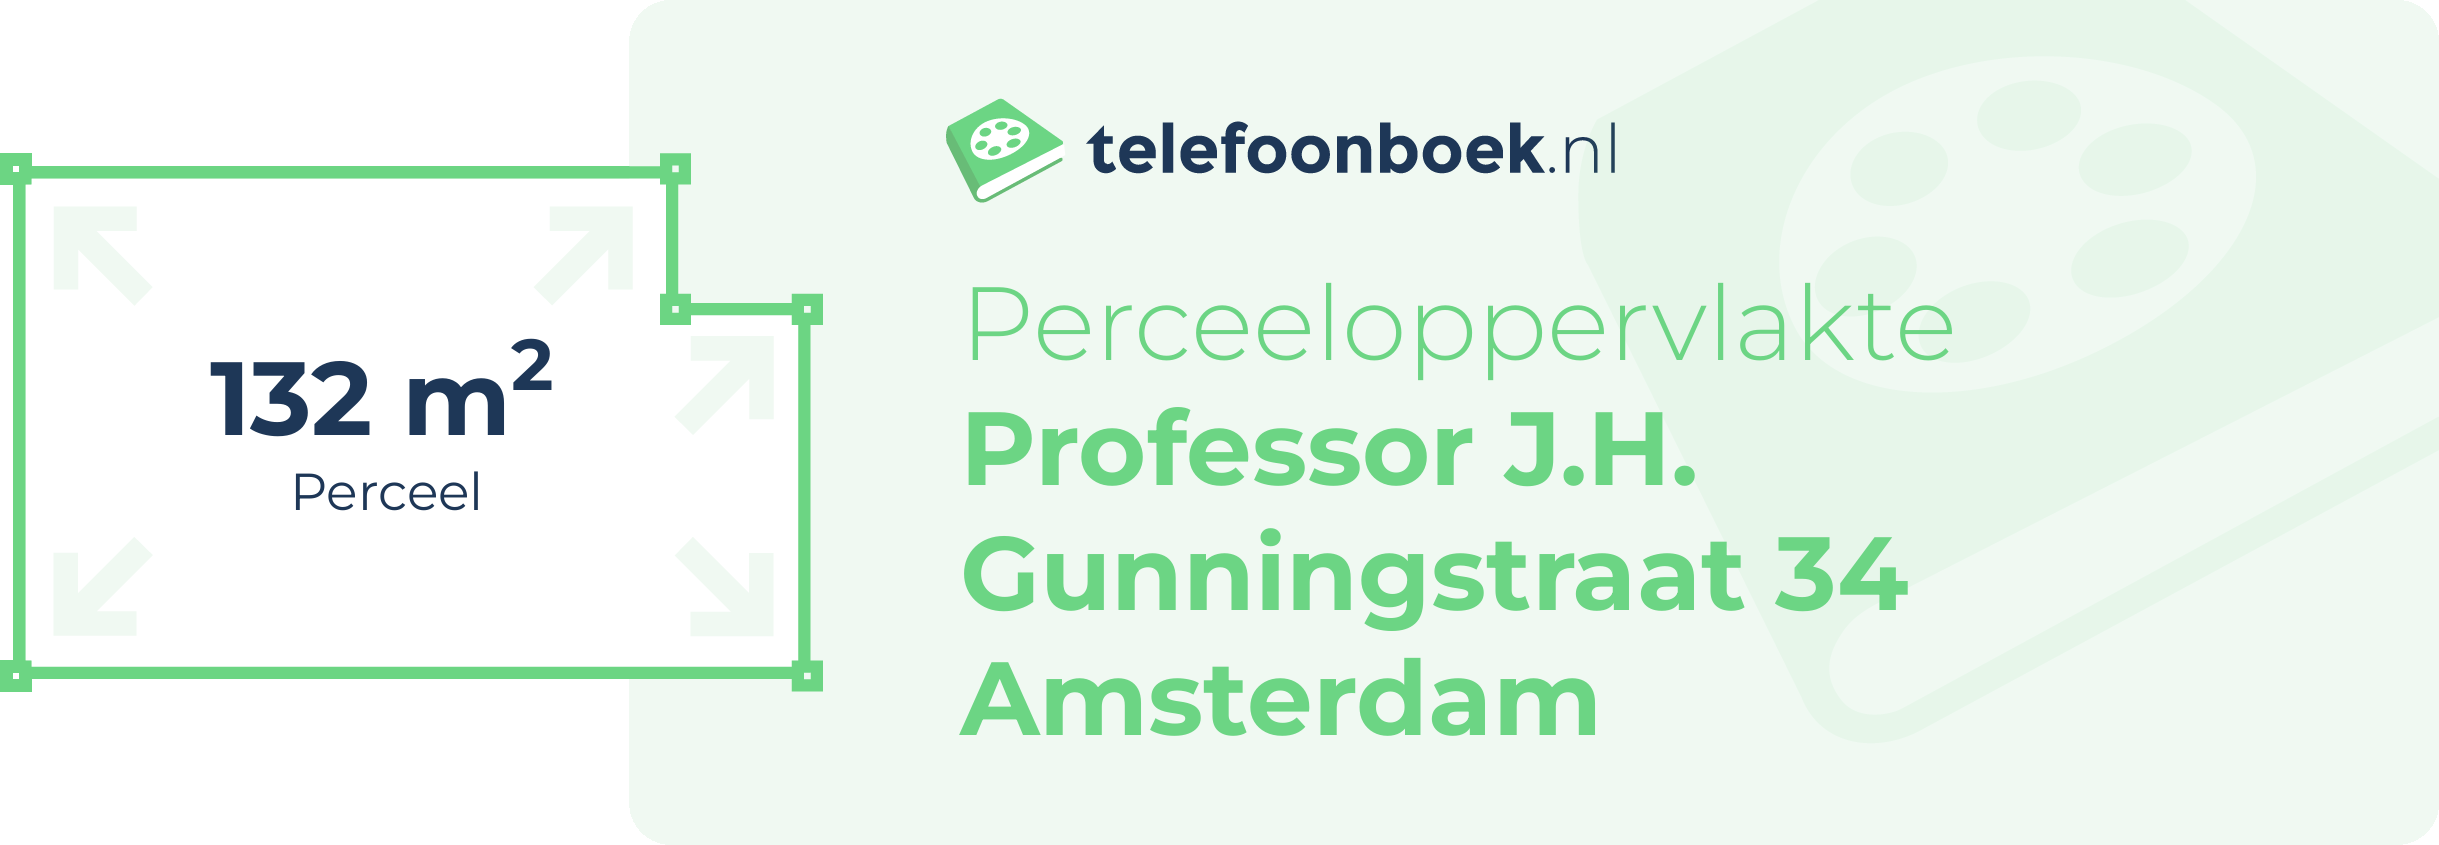 Perceeloppervlakte Professor J.H. Gunningstraat 34 Amsterdam